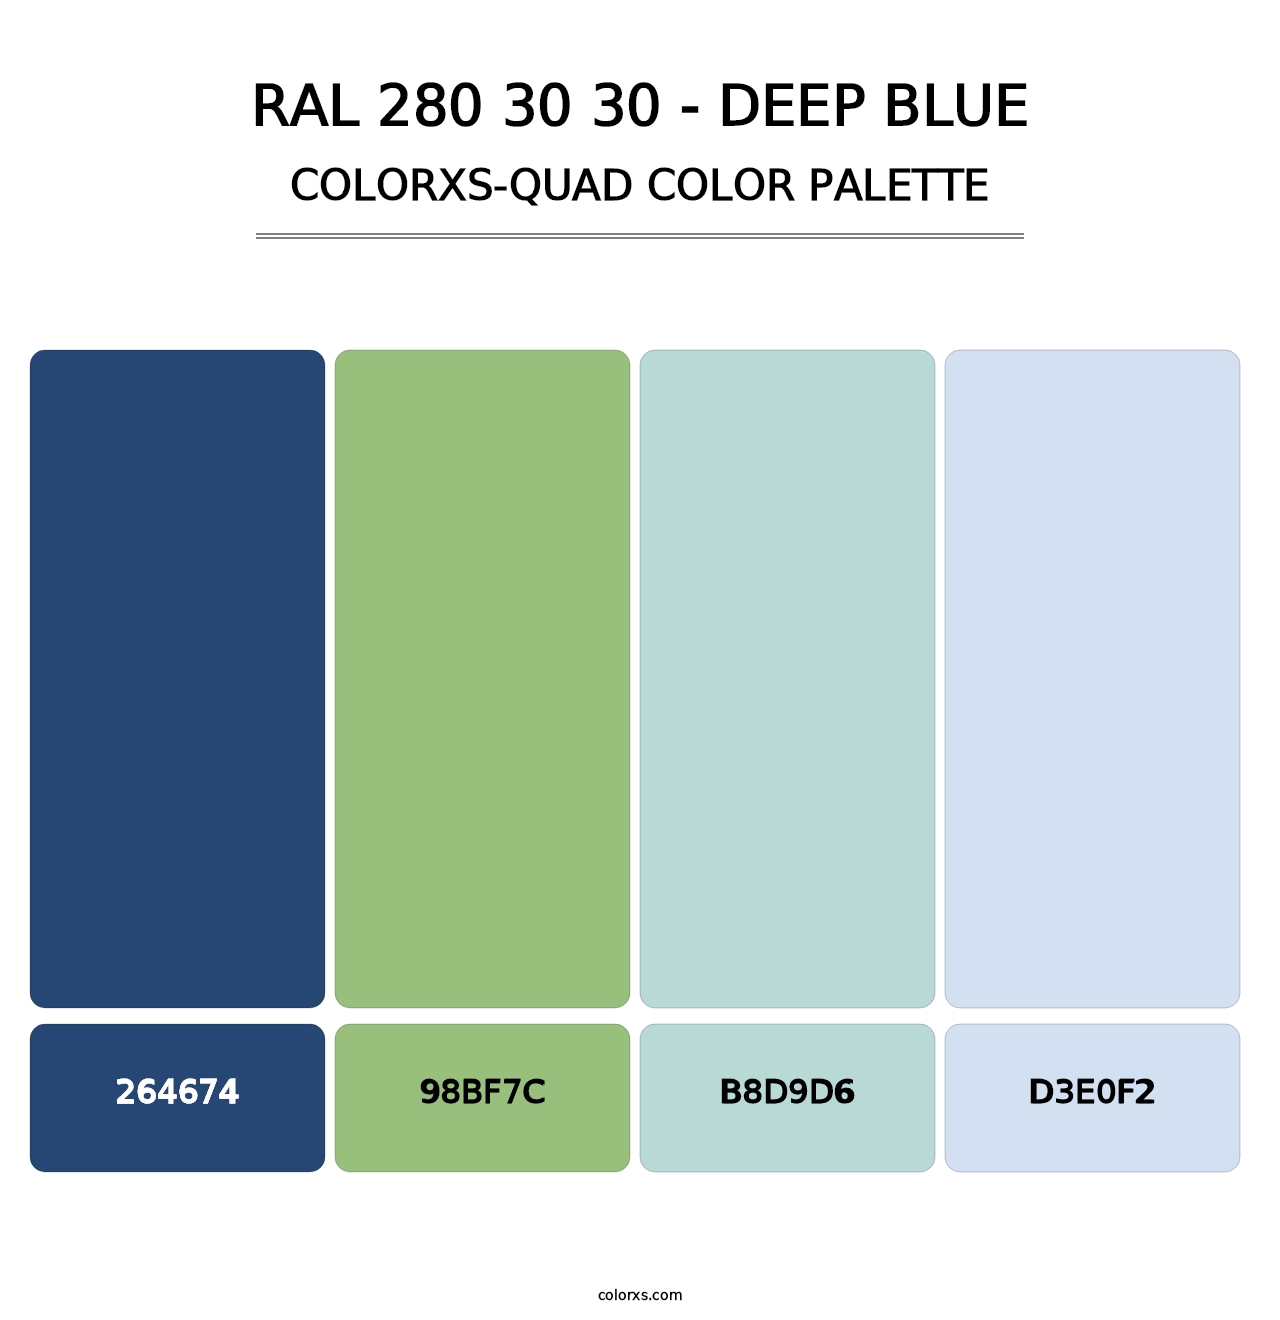 RAL 280 30 30 - Deep Blue - Colorxs Quad Palette